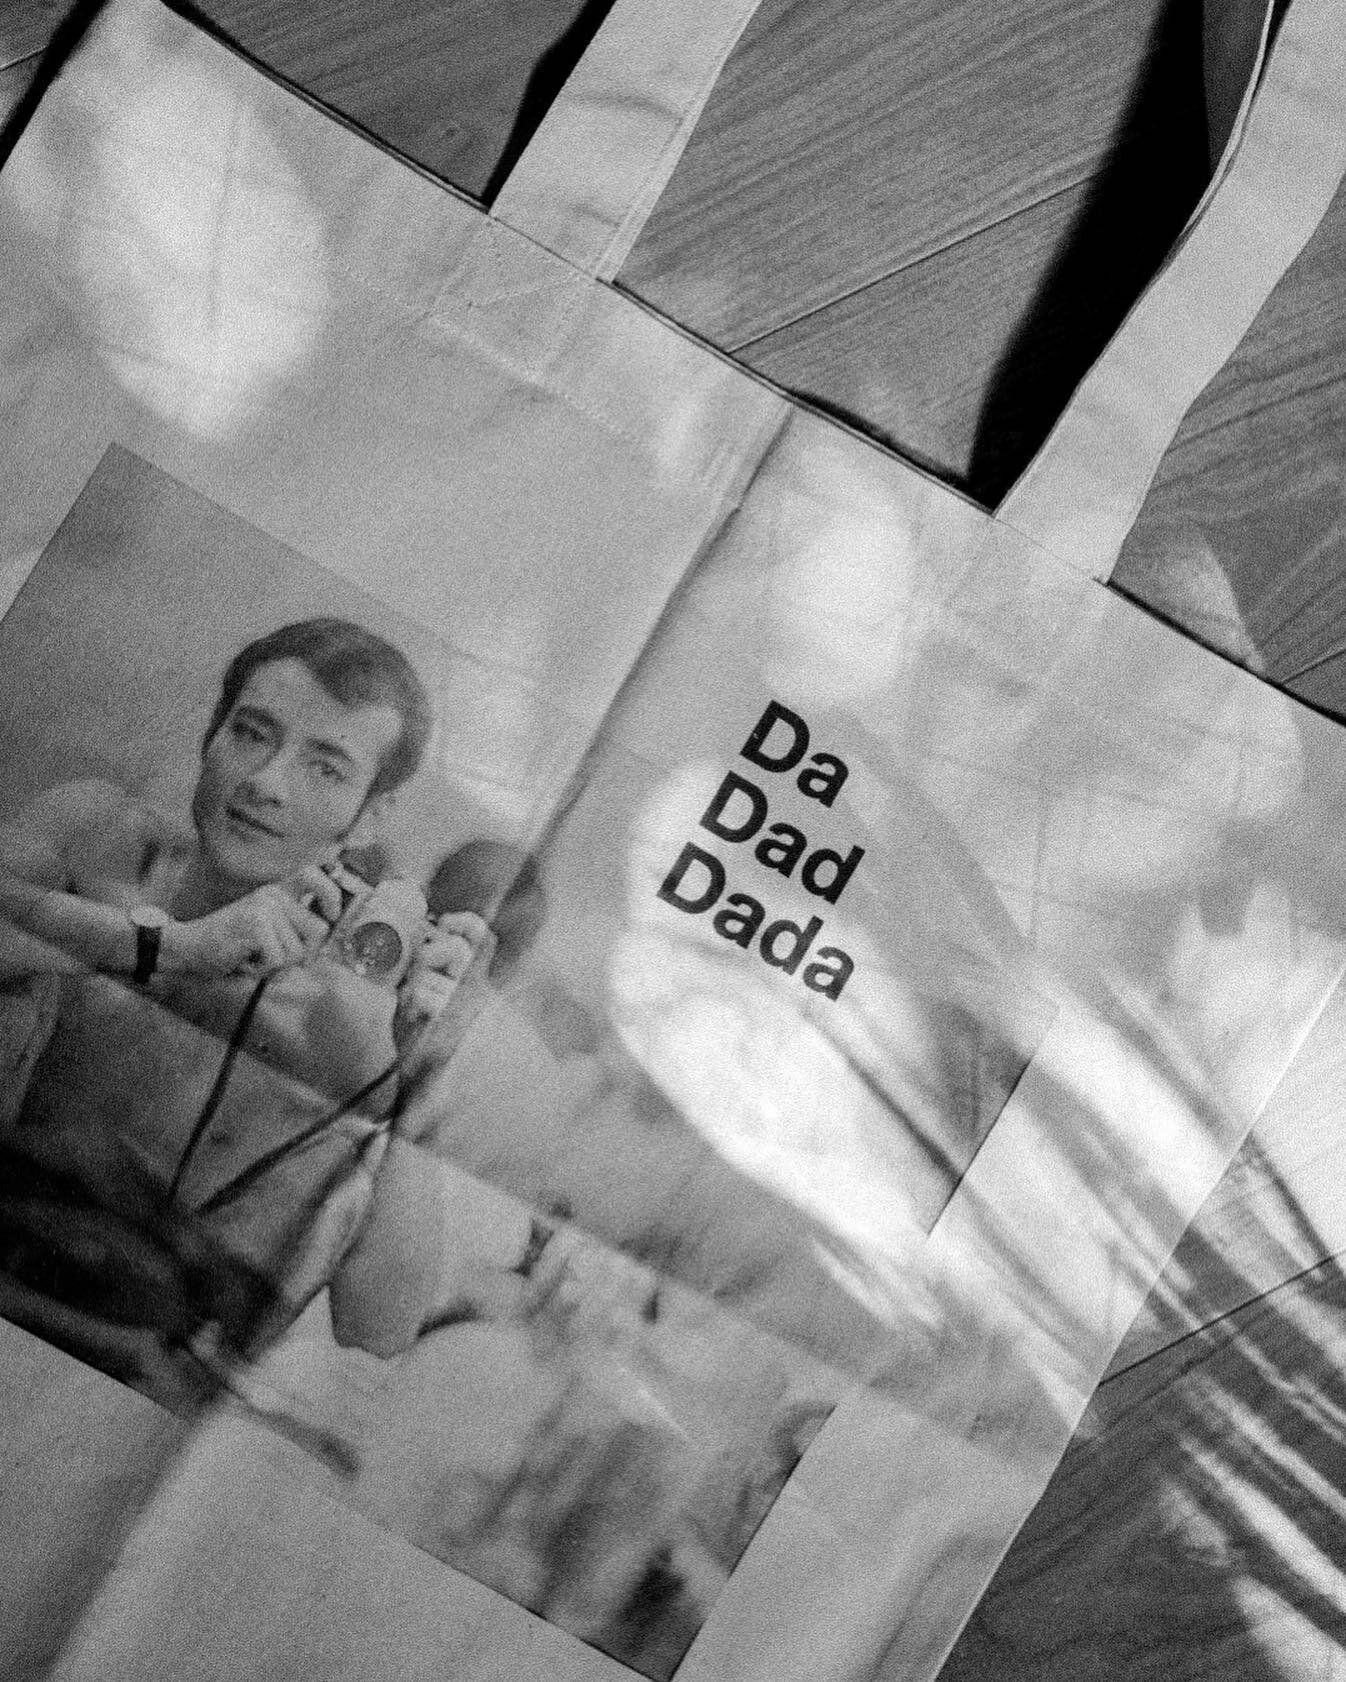 ハラサオリさん @saorihala の『Da Dad Dada』素晴らしかったなぁ。パフォーミングアーツはもともと好きだったけど、こういう作品がもっと観たいと思いました。&ldquo;最も個人的なことが最もクリエイティブなんだ&rdquo; マーティン・スコセッシ

どちらにするか迷った原健トートはお気に入り📷 #dadaddada